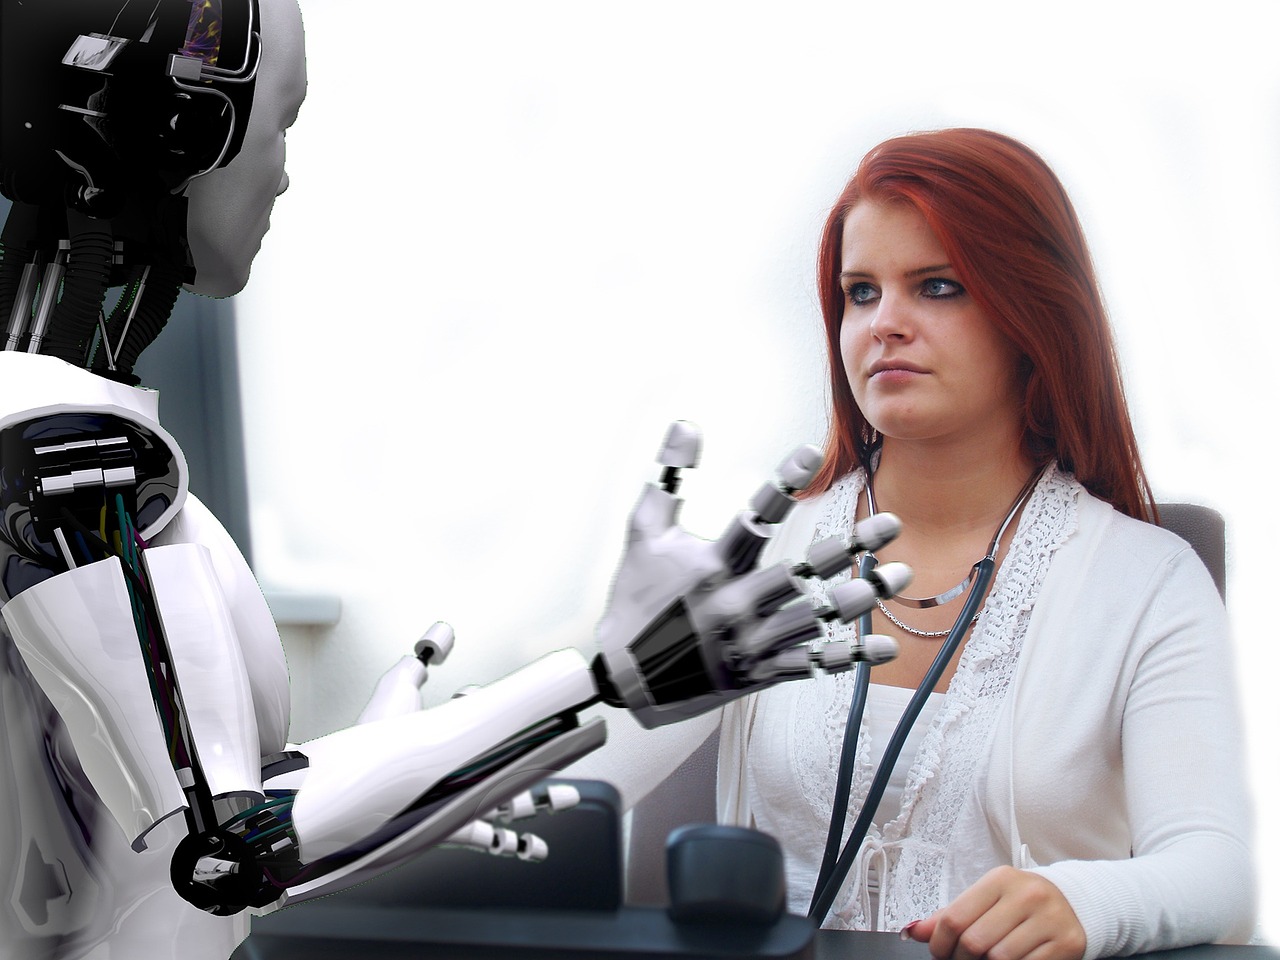 Roboti bi u narednih deset godina mogli preuzeti 20 miliona radnih mjesta